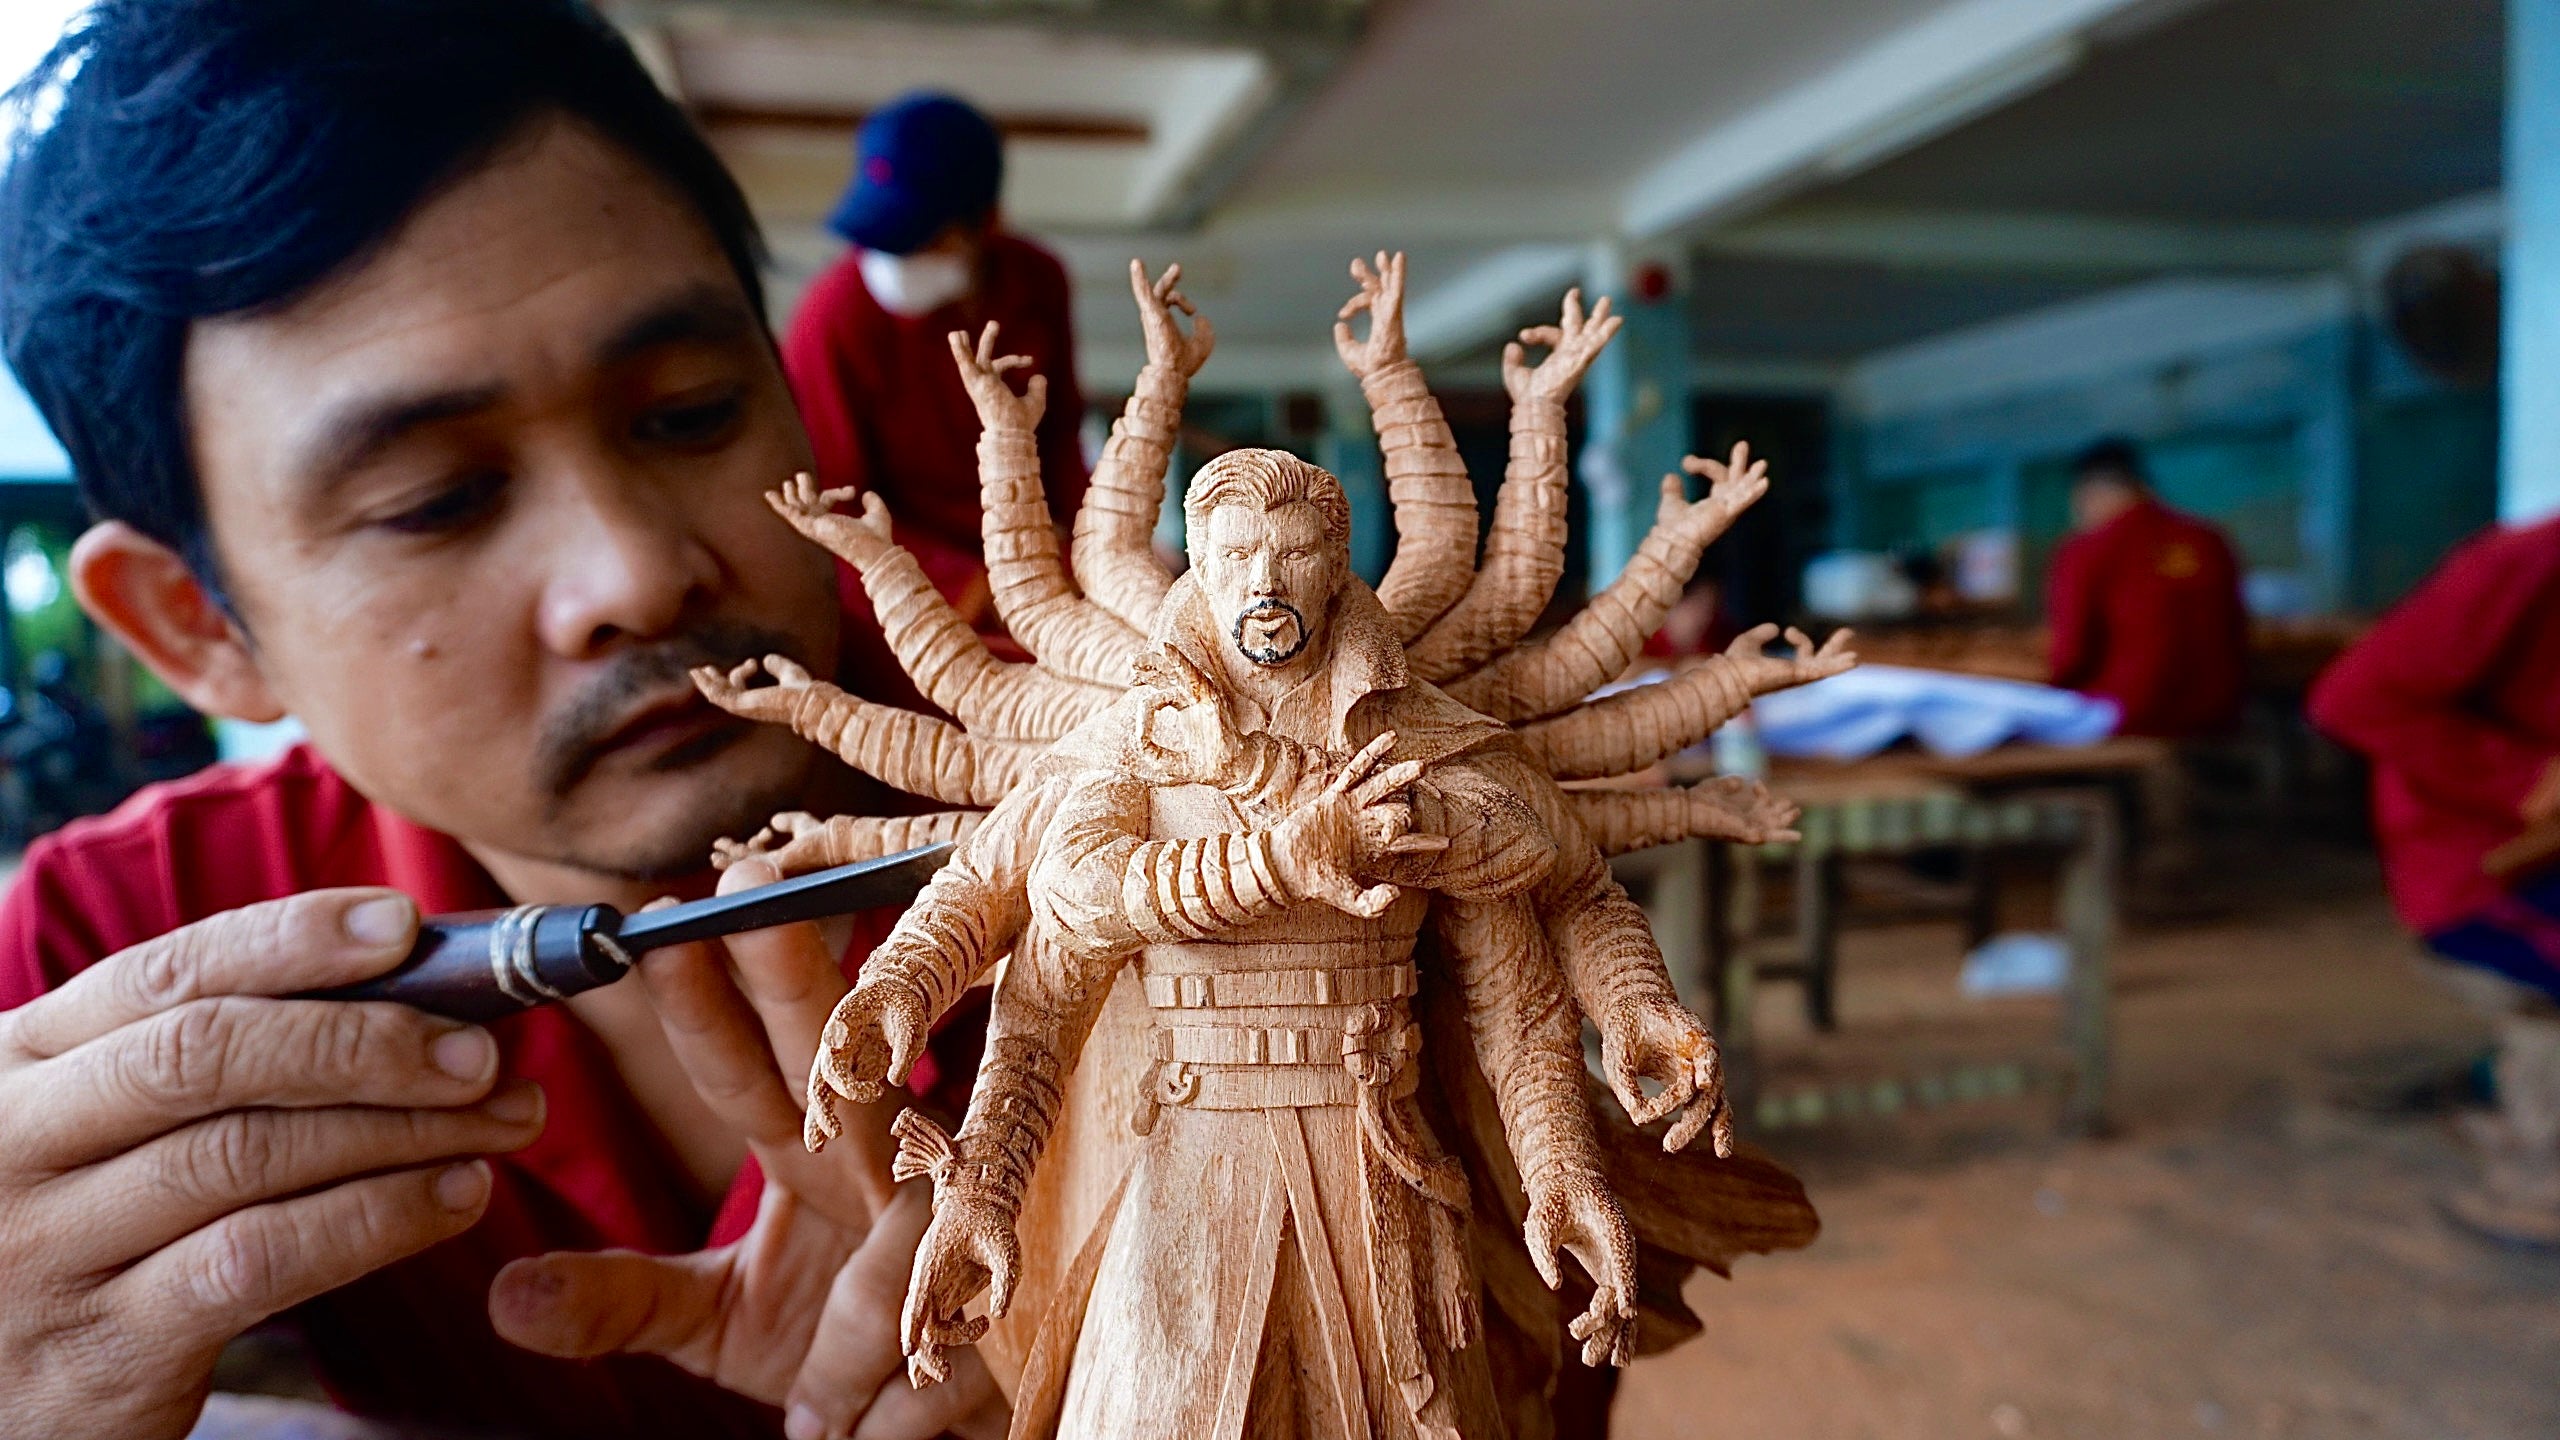 Doctor Strange Figure Wood Carving - Woodart Vietnam 